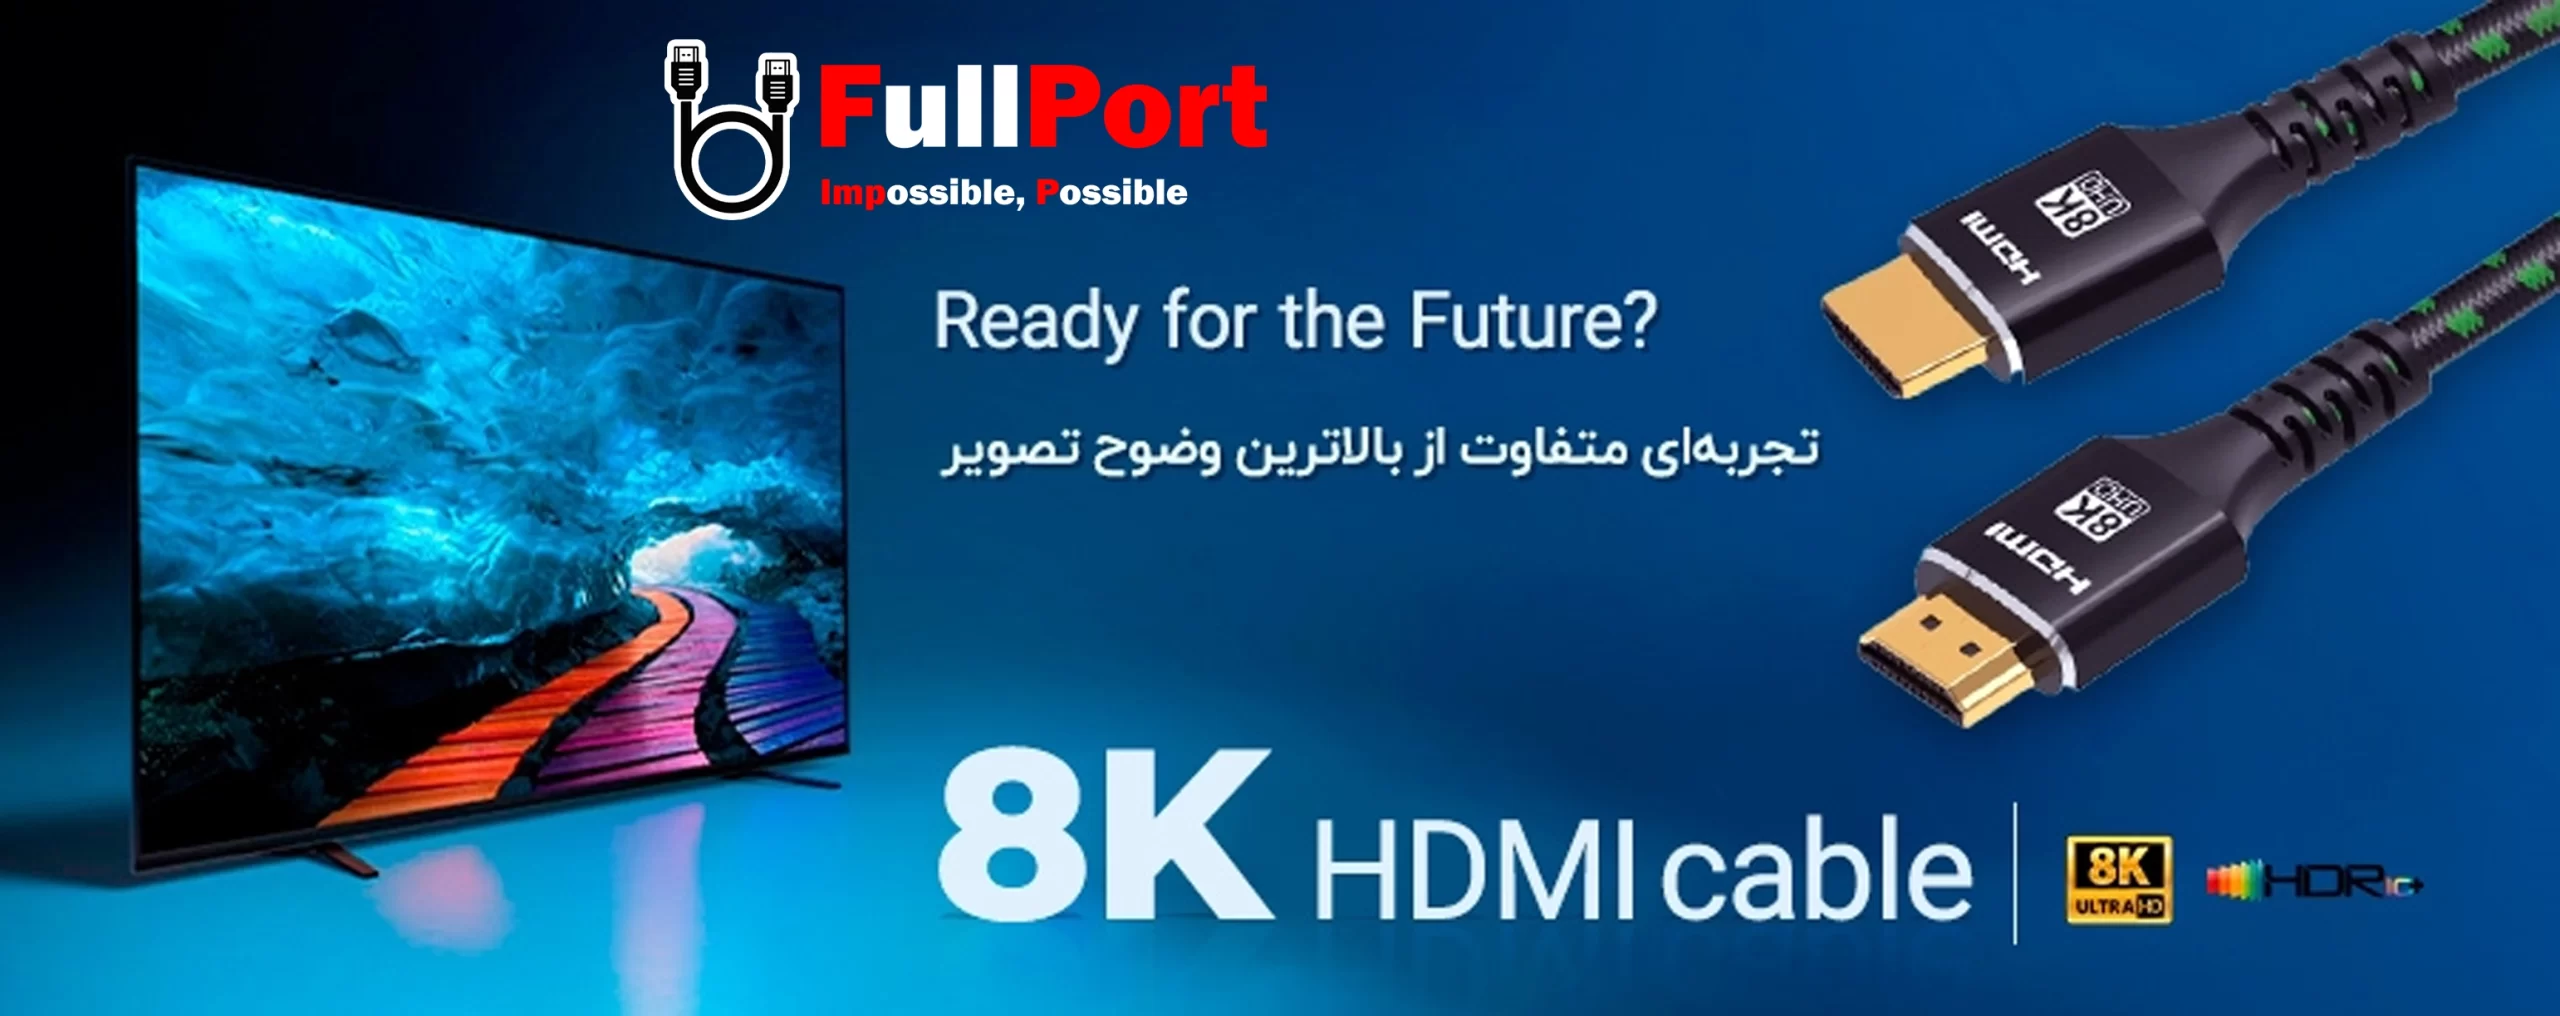 خرید اینترنتی کابل HDMI فرانت | FARANET با گارانتی فرانت 1 سال از فروشگاه اینترنتی فول پورت